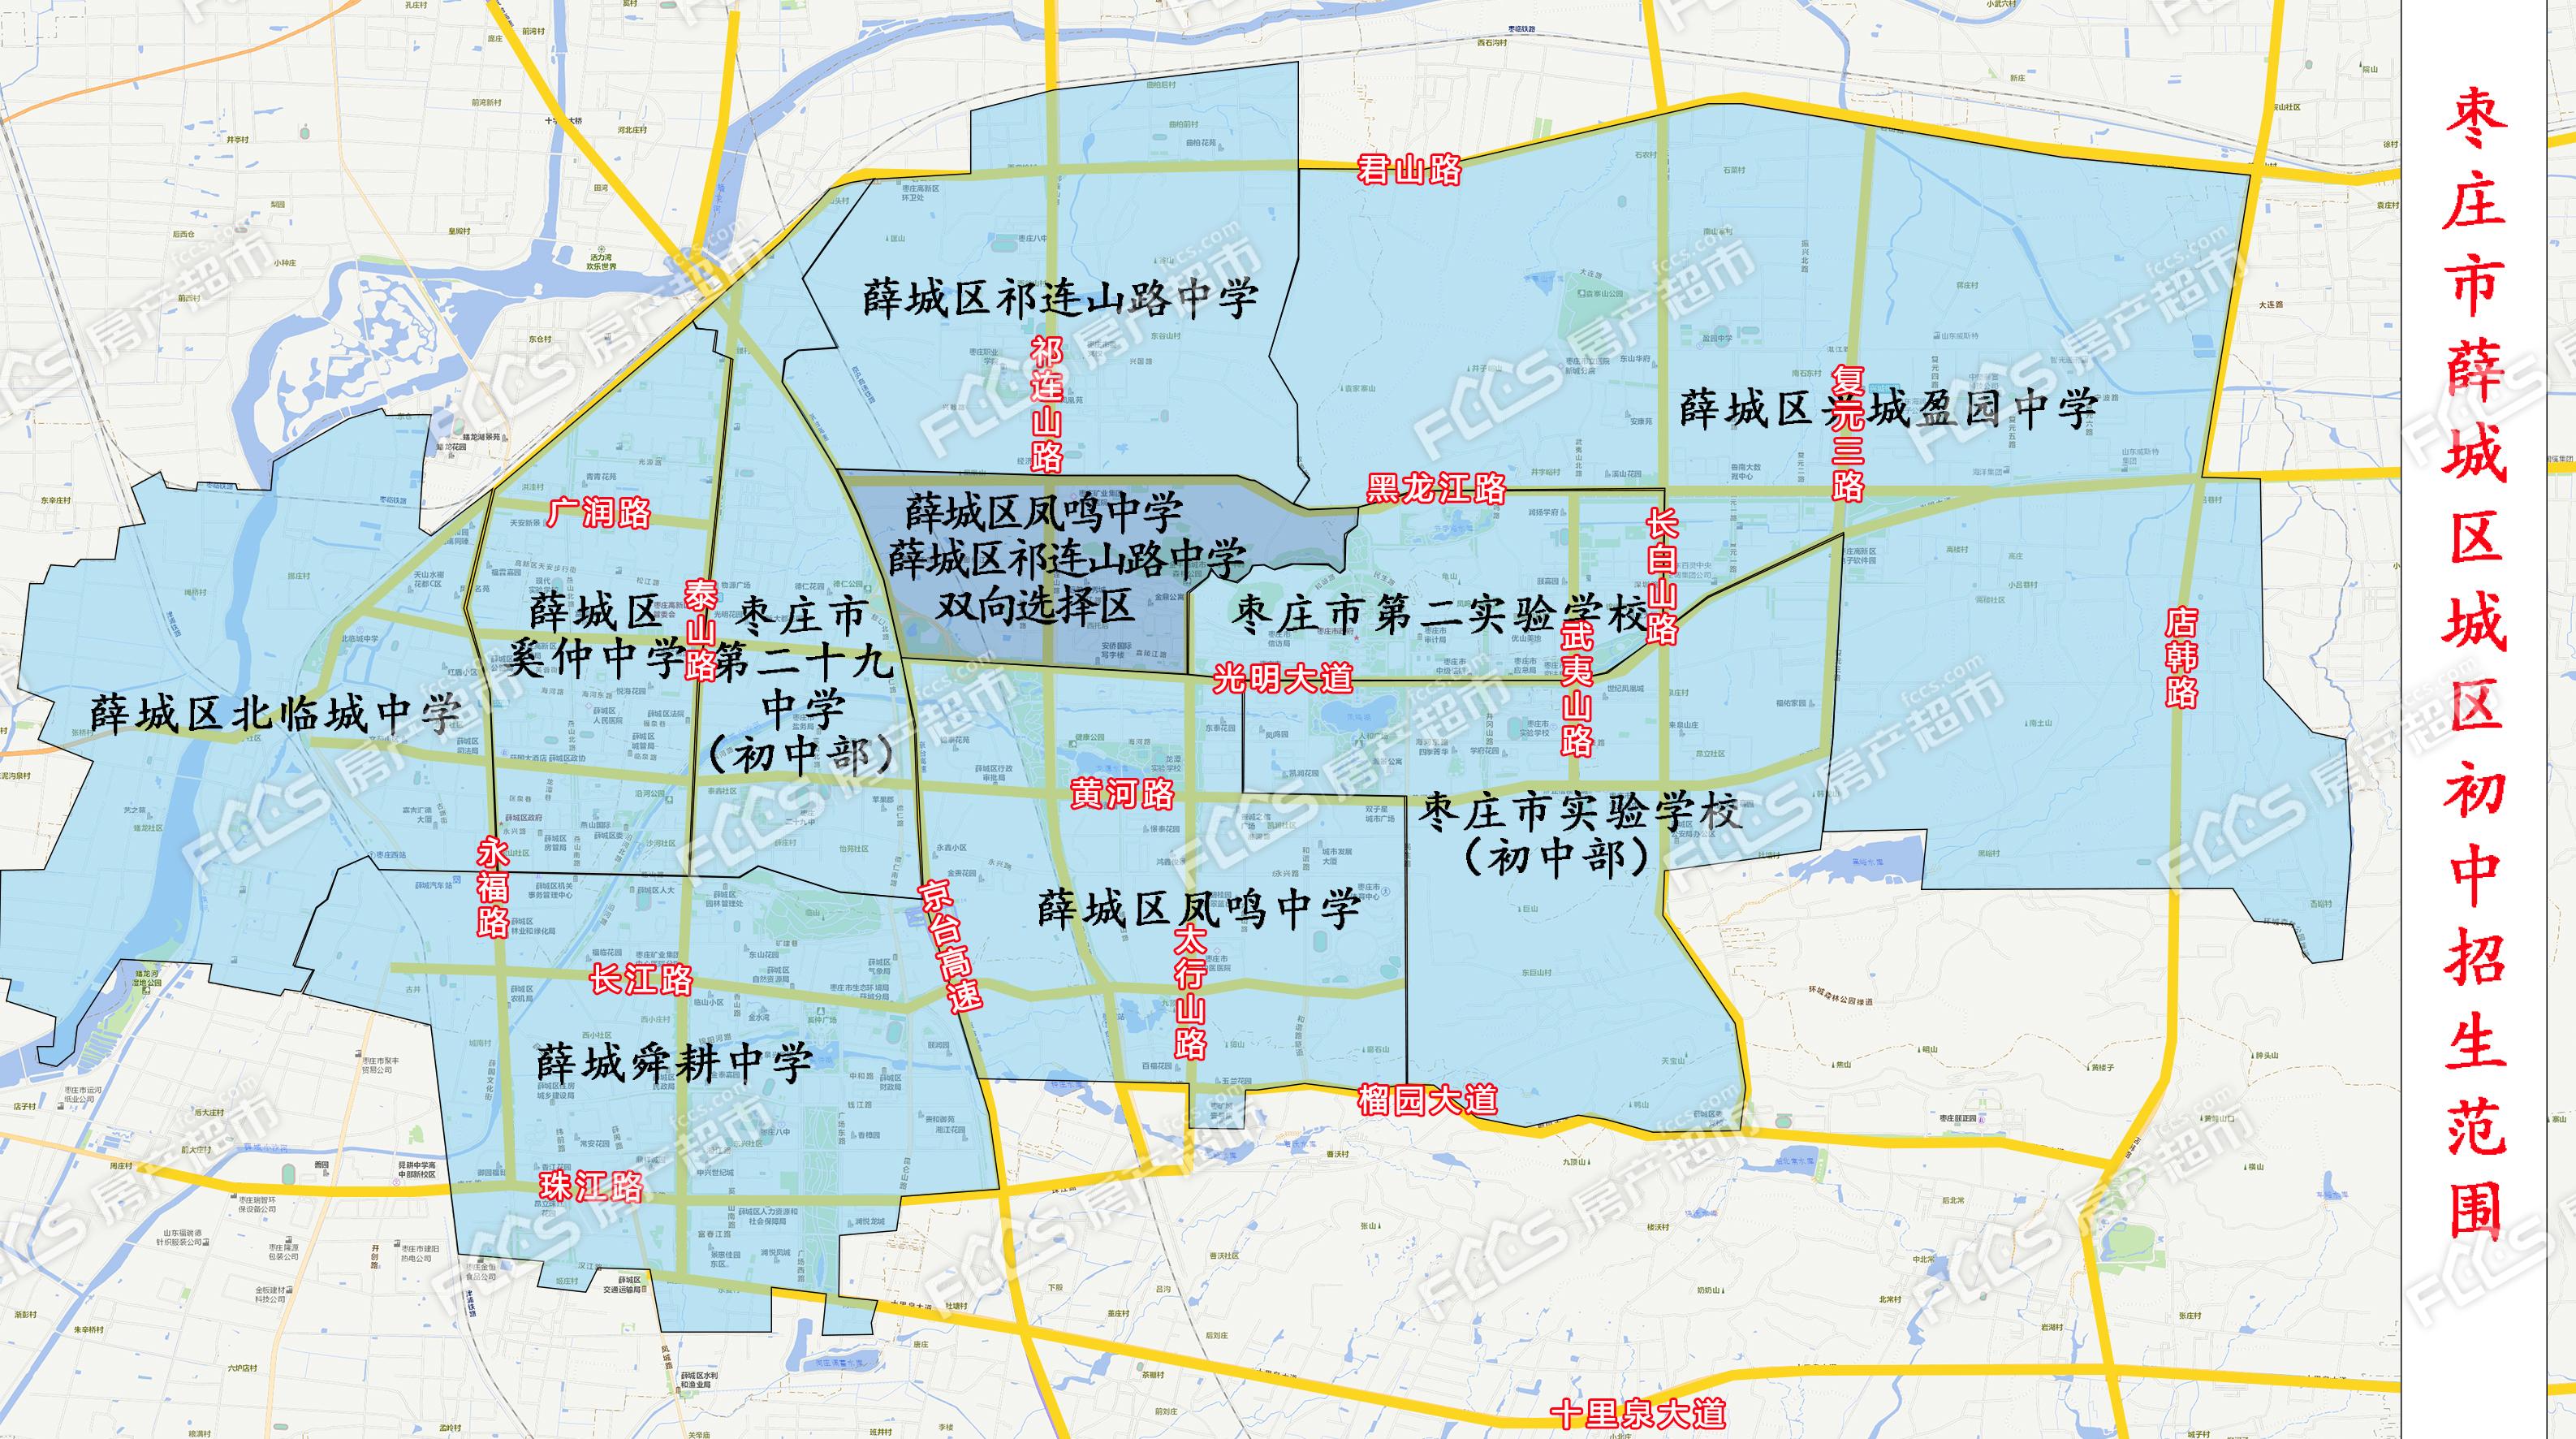 薛城区临城街道划分图片